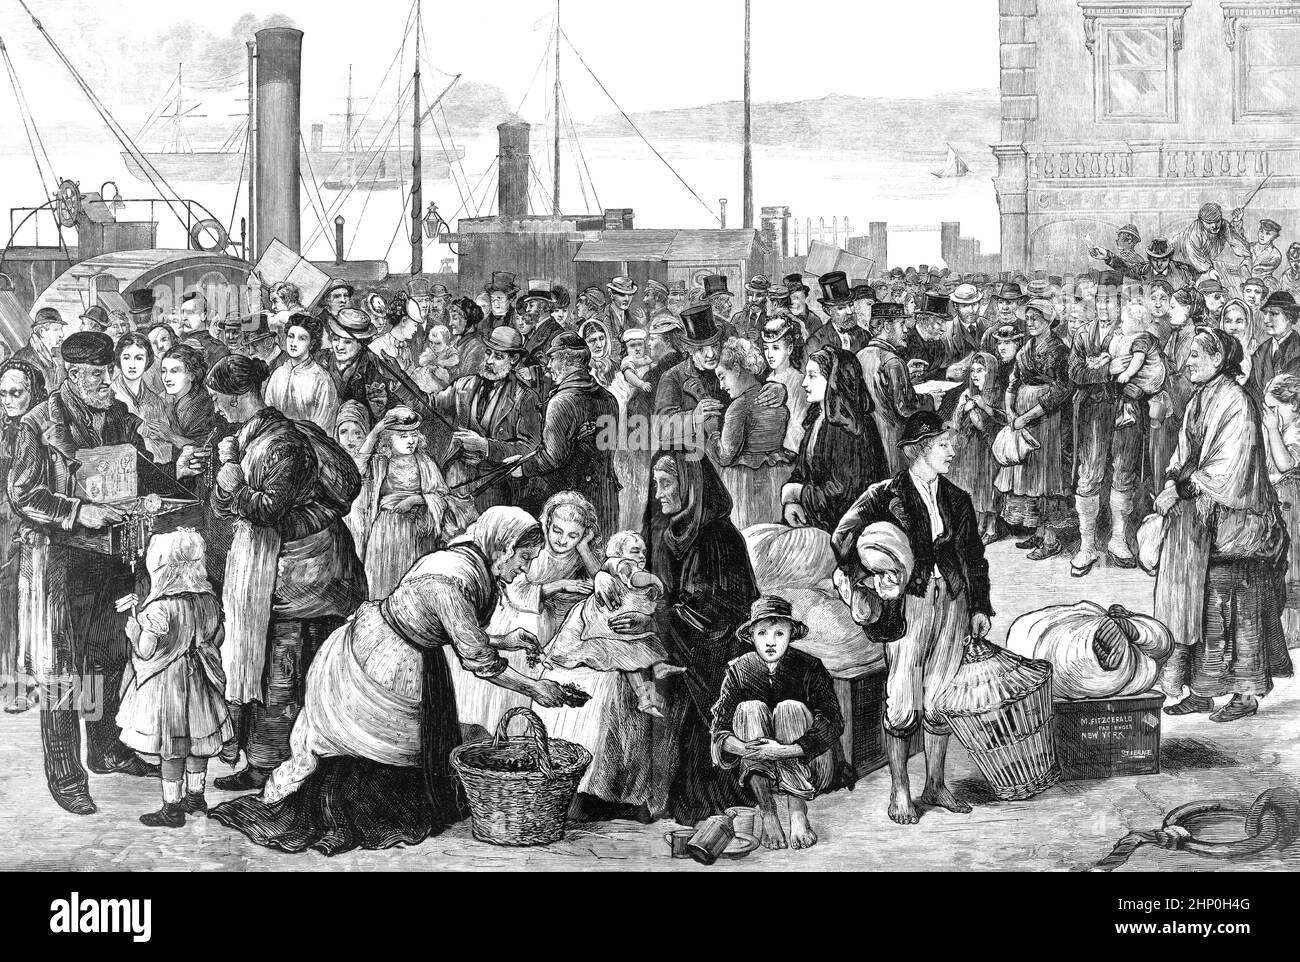 Une illustration de 19th siècles d'immigrants irlandais quittant Queenstown (Cobh) dans le comté de Cork pour l'Amérique pendant la Grande famine, ou la famine ou la famine irlandaise de la pomme de terre (surtout en dehors de l'Irlande), une période de famine et de maladie de masse en Irlande de 1845 à 1852; Les zones les plus touchées se trouvent à l'ouest et au sud de l'Irlande, où la langue irlandaise est dominante. Pendant la famine, environ 1 millions de personnes sont mortes et plus d'un million ont fui le pays, ce qui a entraîné une chute de la population du pays de 20 à 25 %. Banque D'Images